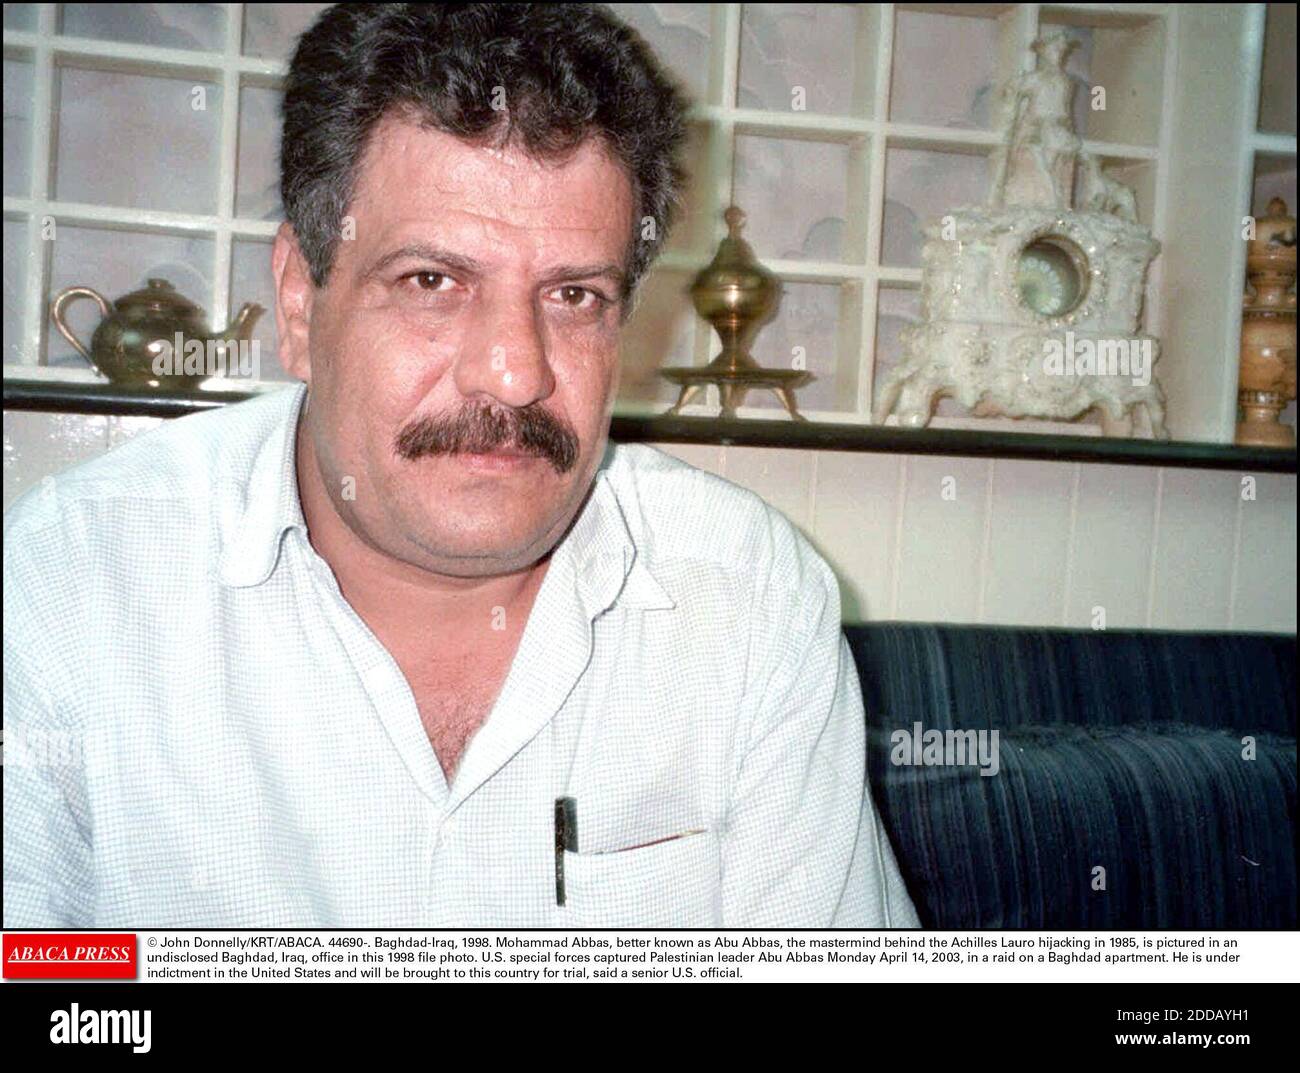 NO HAY PELÍCULA, NO HAY VIDEO, NO HAY TELEVISIÓN, NO HAY DOCUMENTAL - © JOHN DONNELLY/KRT/ABACA. 44690-. Bagdad-Irak, 1998. Mohammad Abbas, mejor conocido como Abul Abbas, el cerebro detrás del secuestro de Aquiles Lauro en 1985, está representado en una oficina no revelada de Bagdad, Irak, en esta foto de archivo de 1998. Fuerzas especiales estadounidenses Foto de stock